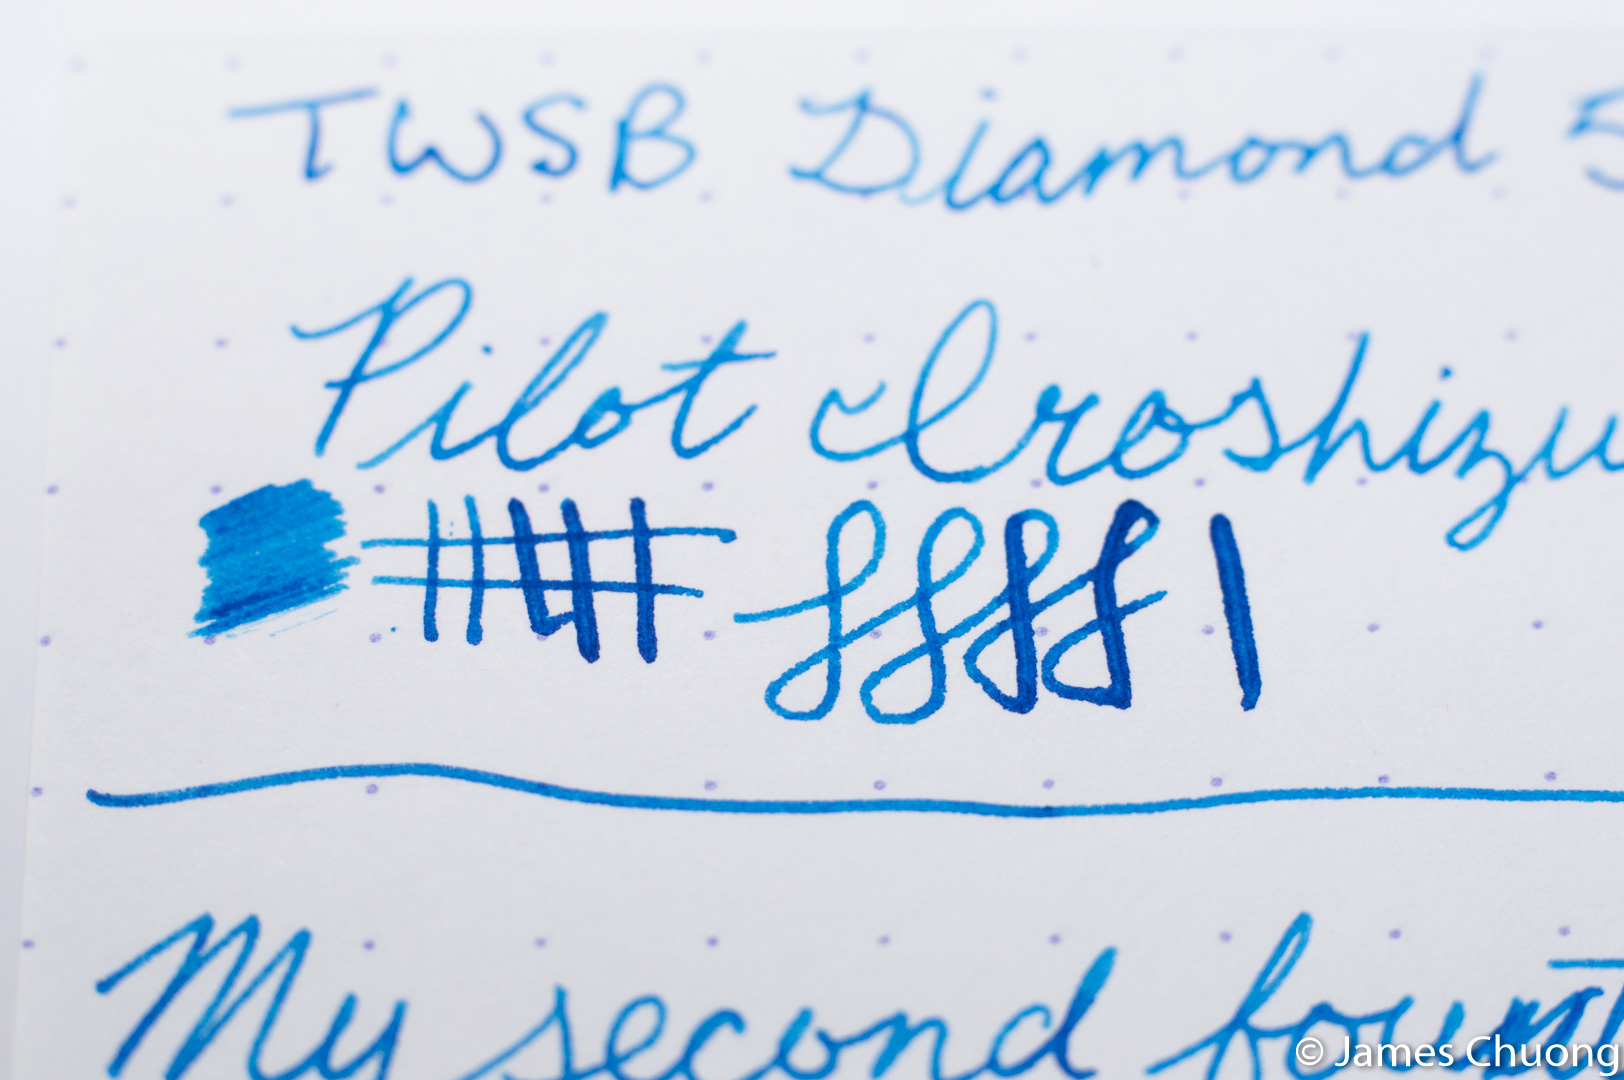 TWSBI 580 Extra-fine writing sample closeup